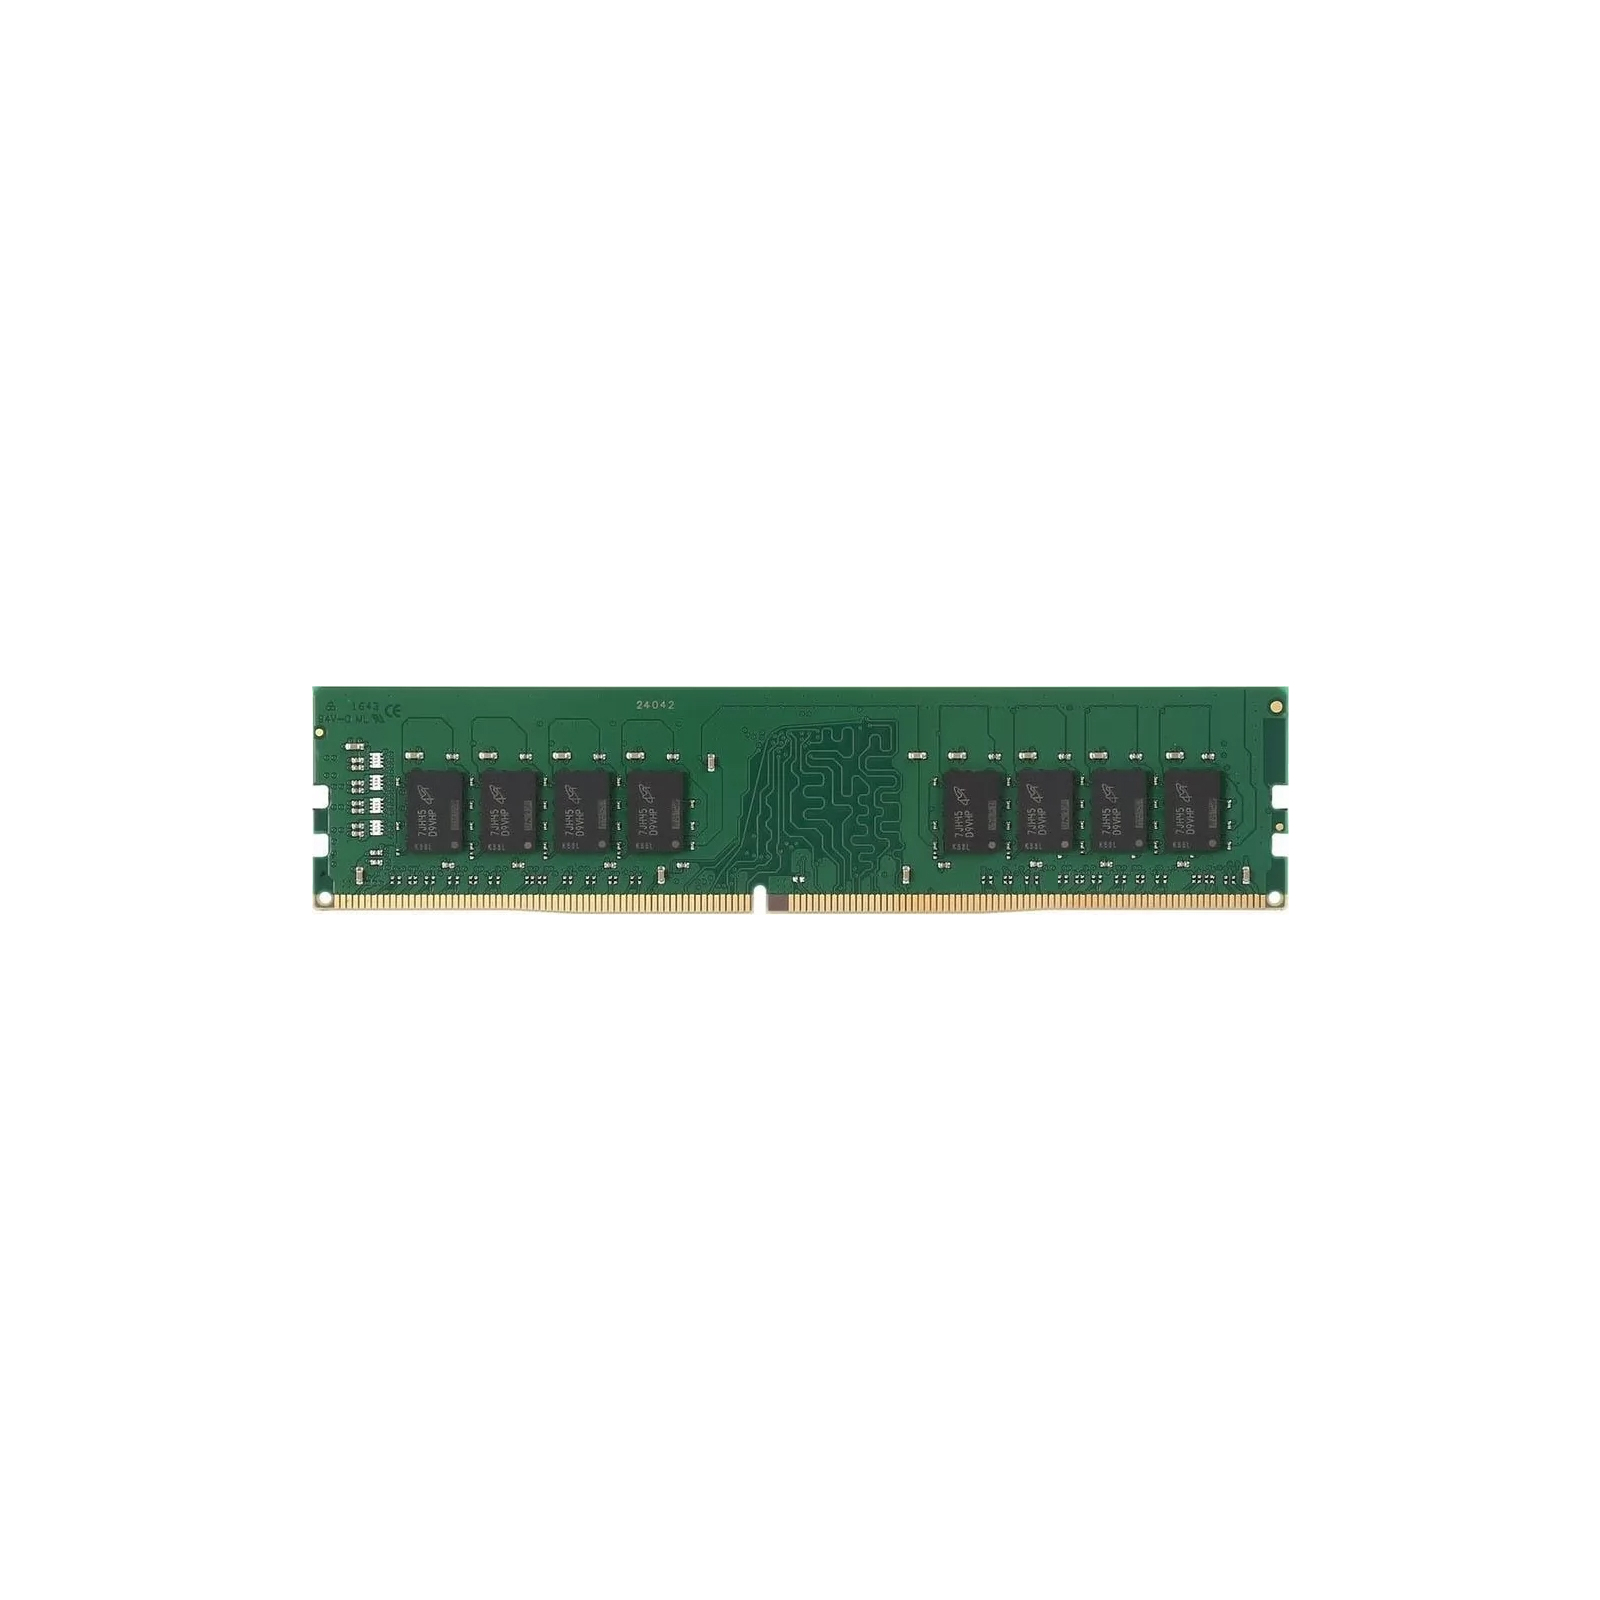 Модуль памяти для компьютера DDR4 32GB 3200 MHz Kingston (KVR32N22D8/32)